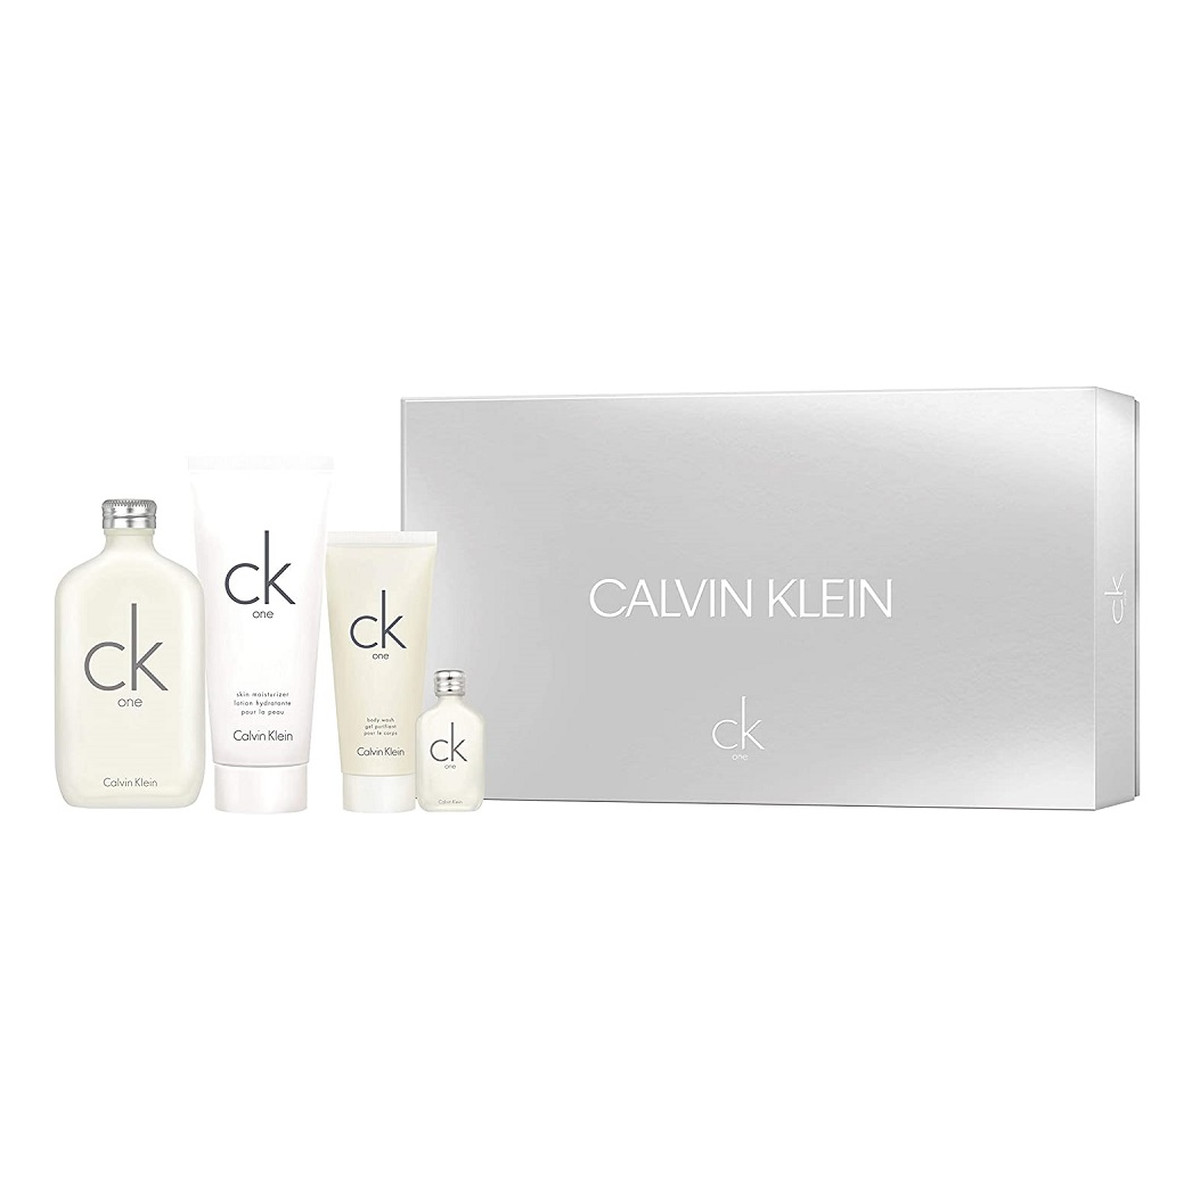 Calvin Klein CK One Zestaw woda toaletowa spray 200ml + balsam do ciała 200ml + żel pod prysznic 100ml + miniatura wody toaletowej 15ml